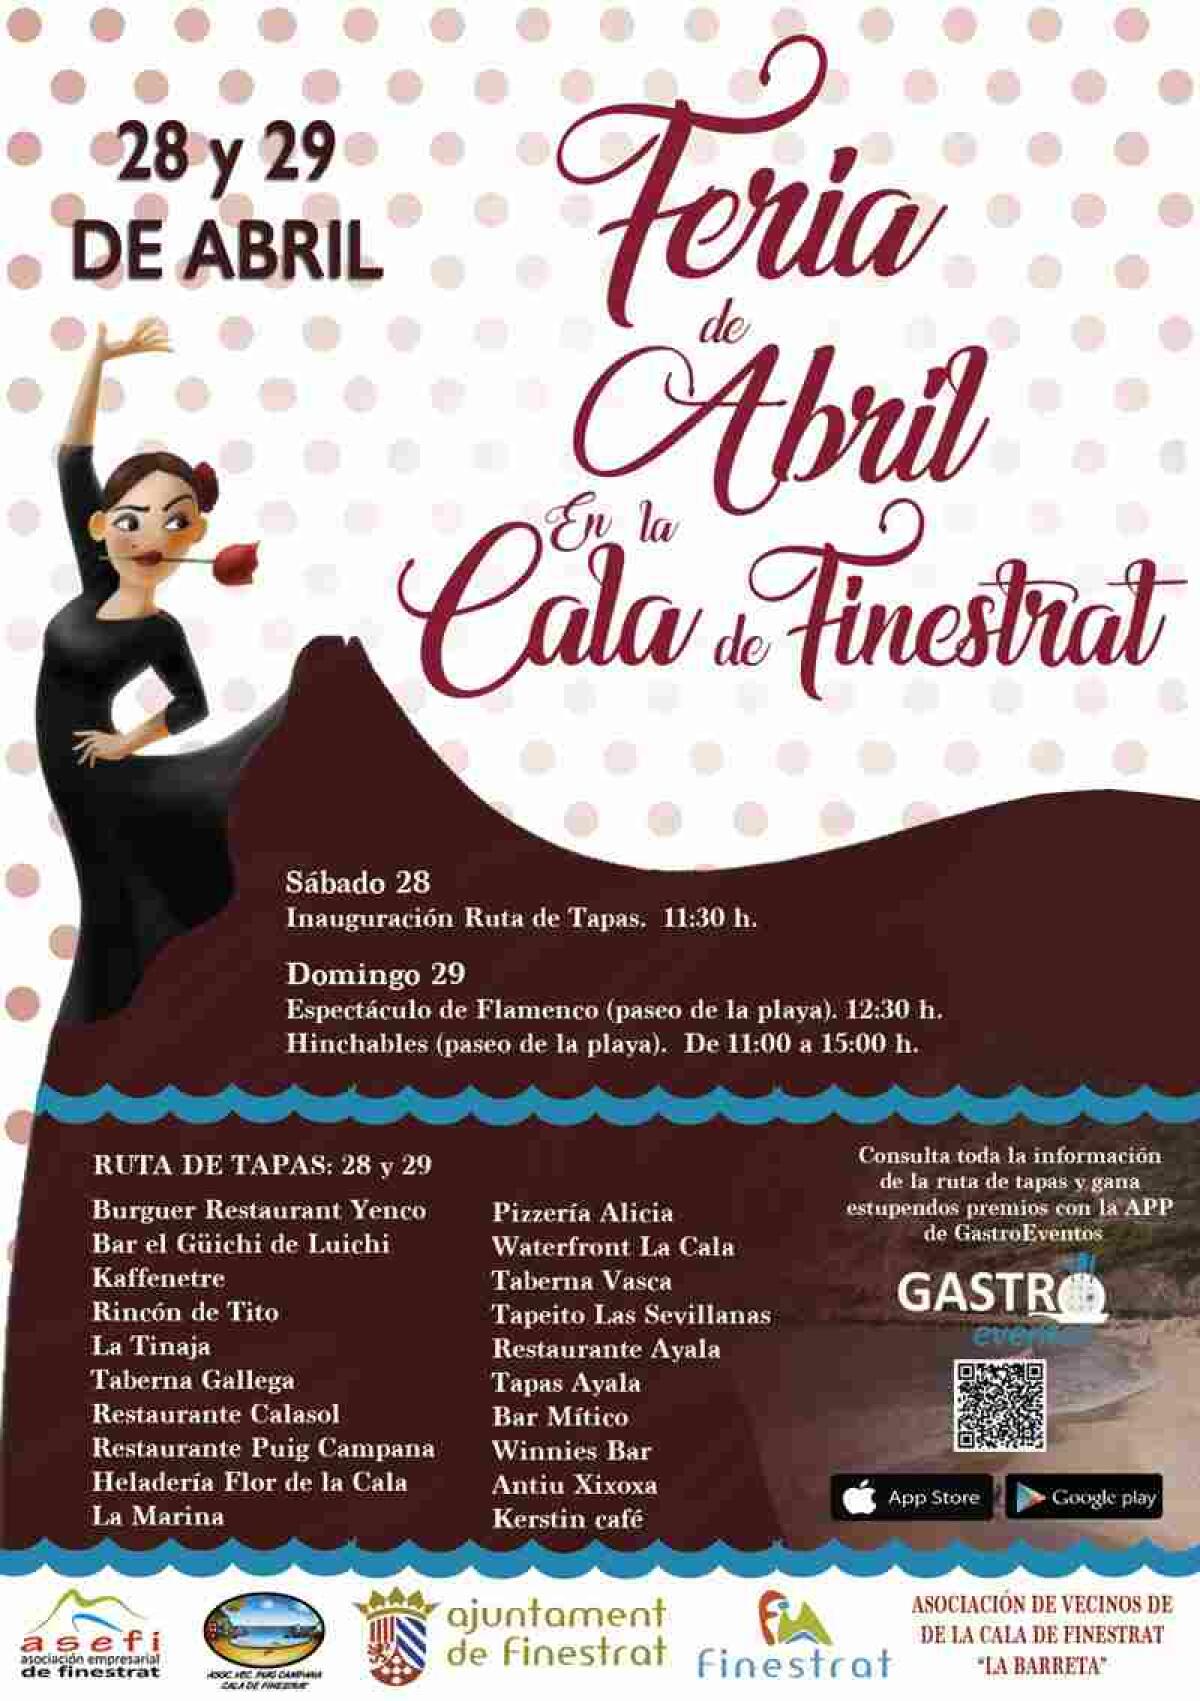 La Cala de Finestrat se prepara para la “Feria de Abril” que se celebra el fin de semana del 28 y 29 